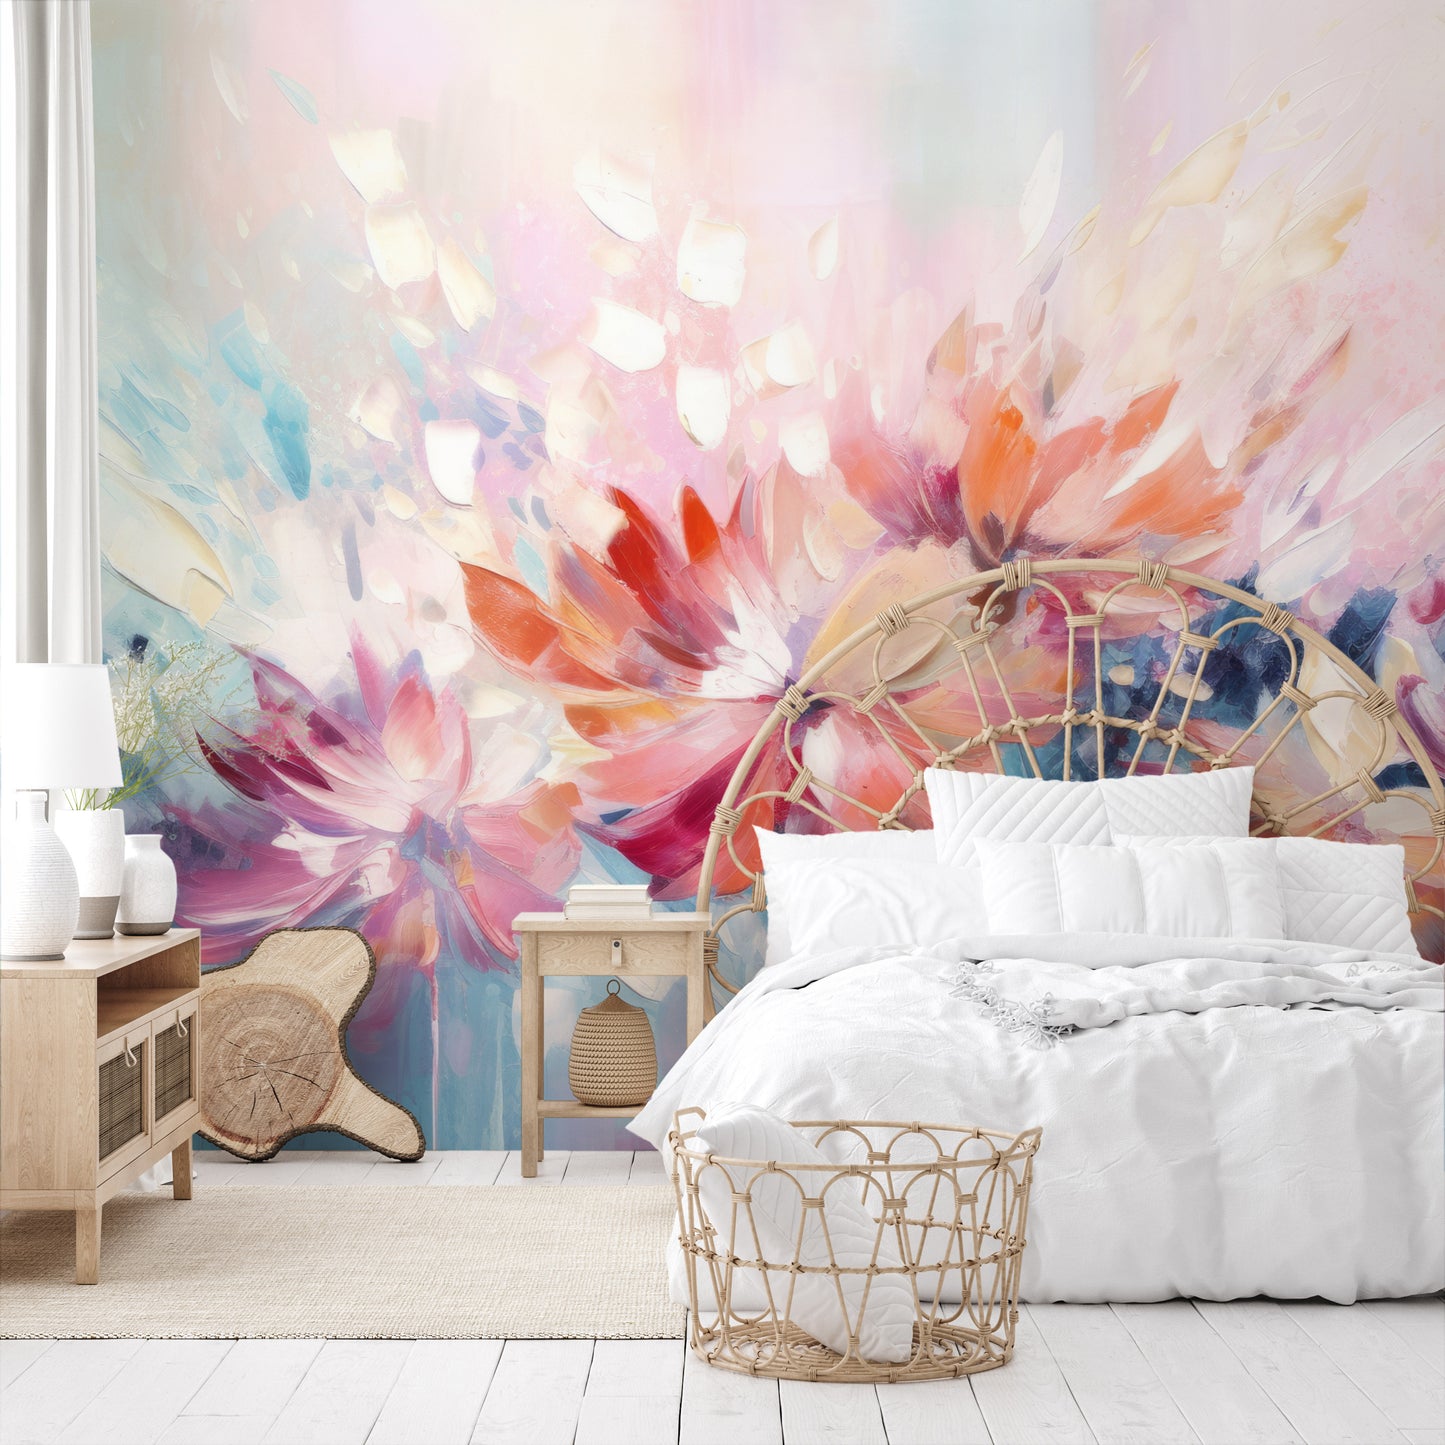 Fototapeta o nazwie Floral Watercolor Fantasy użyta w aranzacji wnętrza.